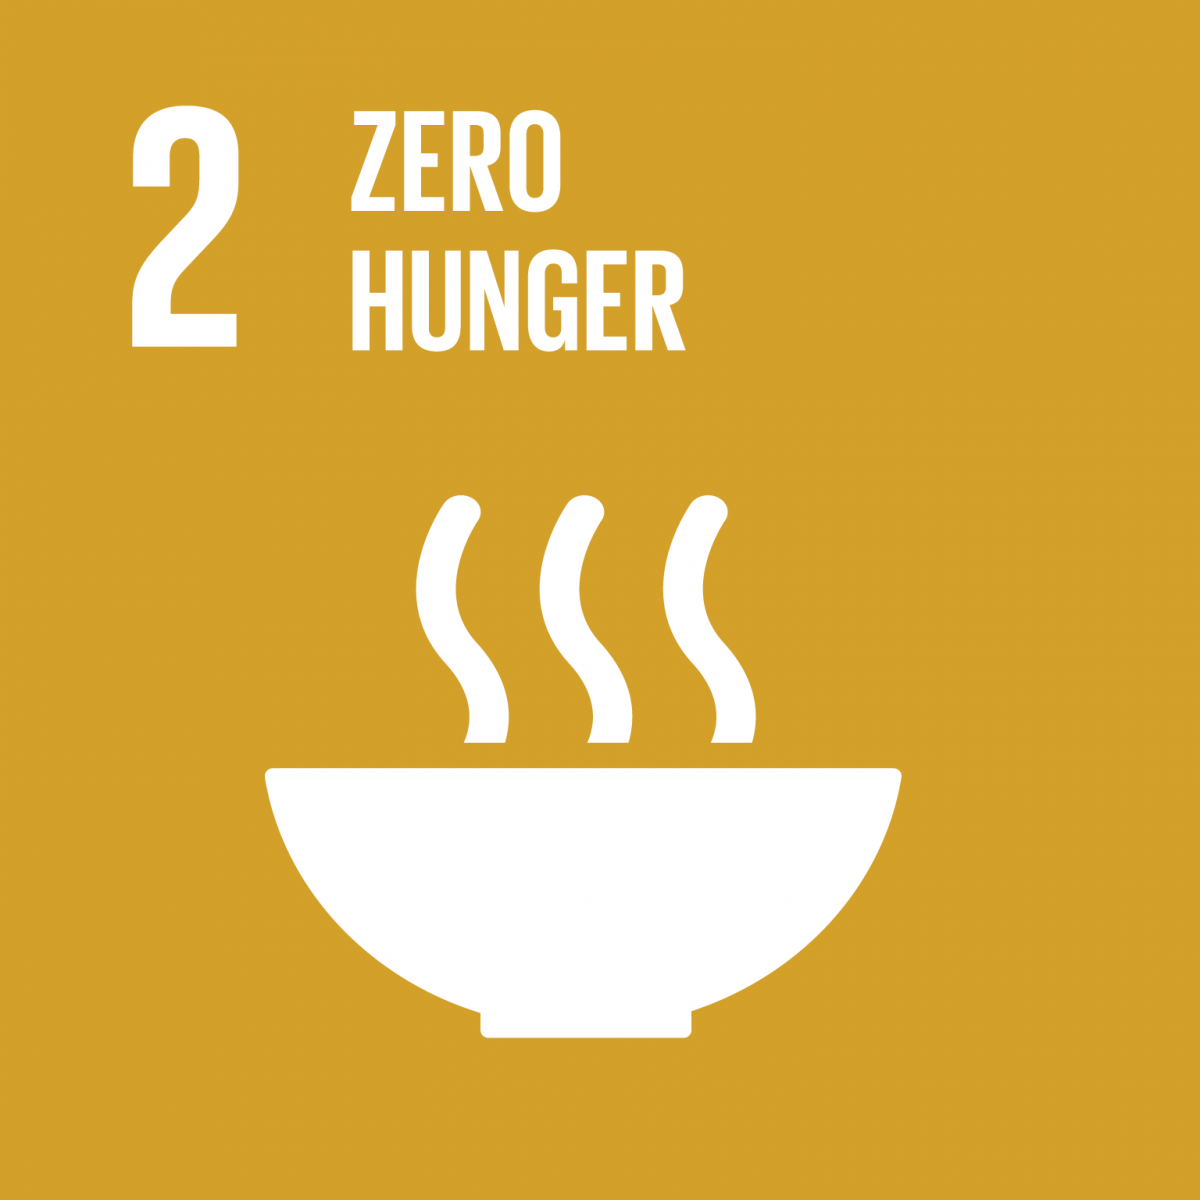 2. SDG: Kein Hunger